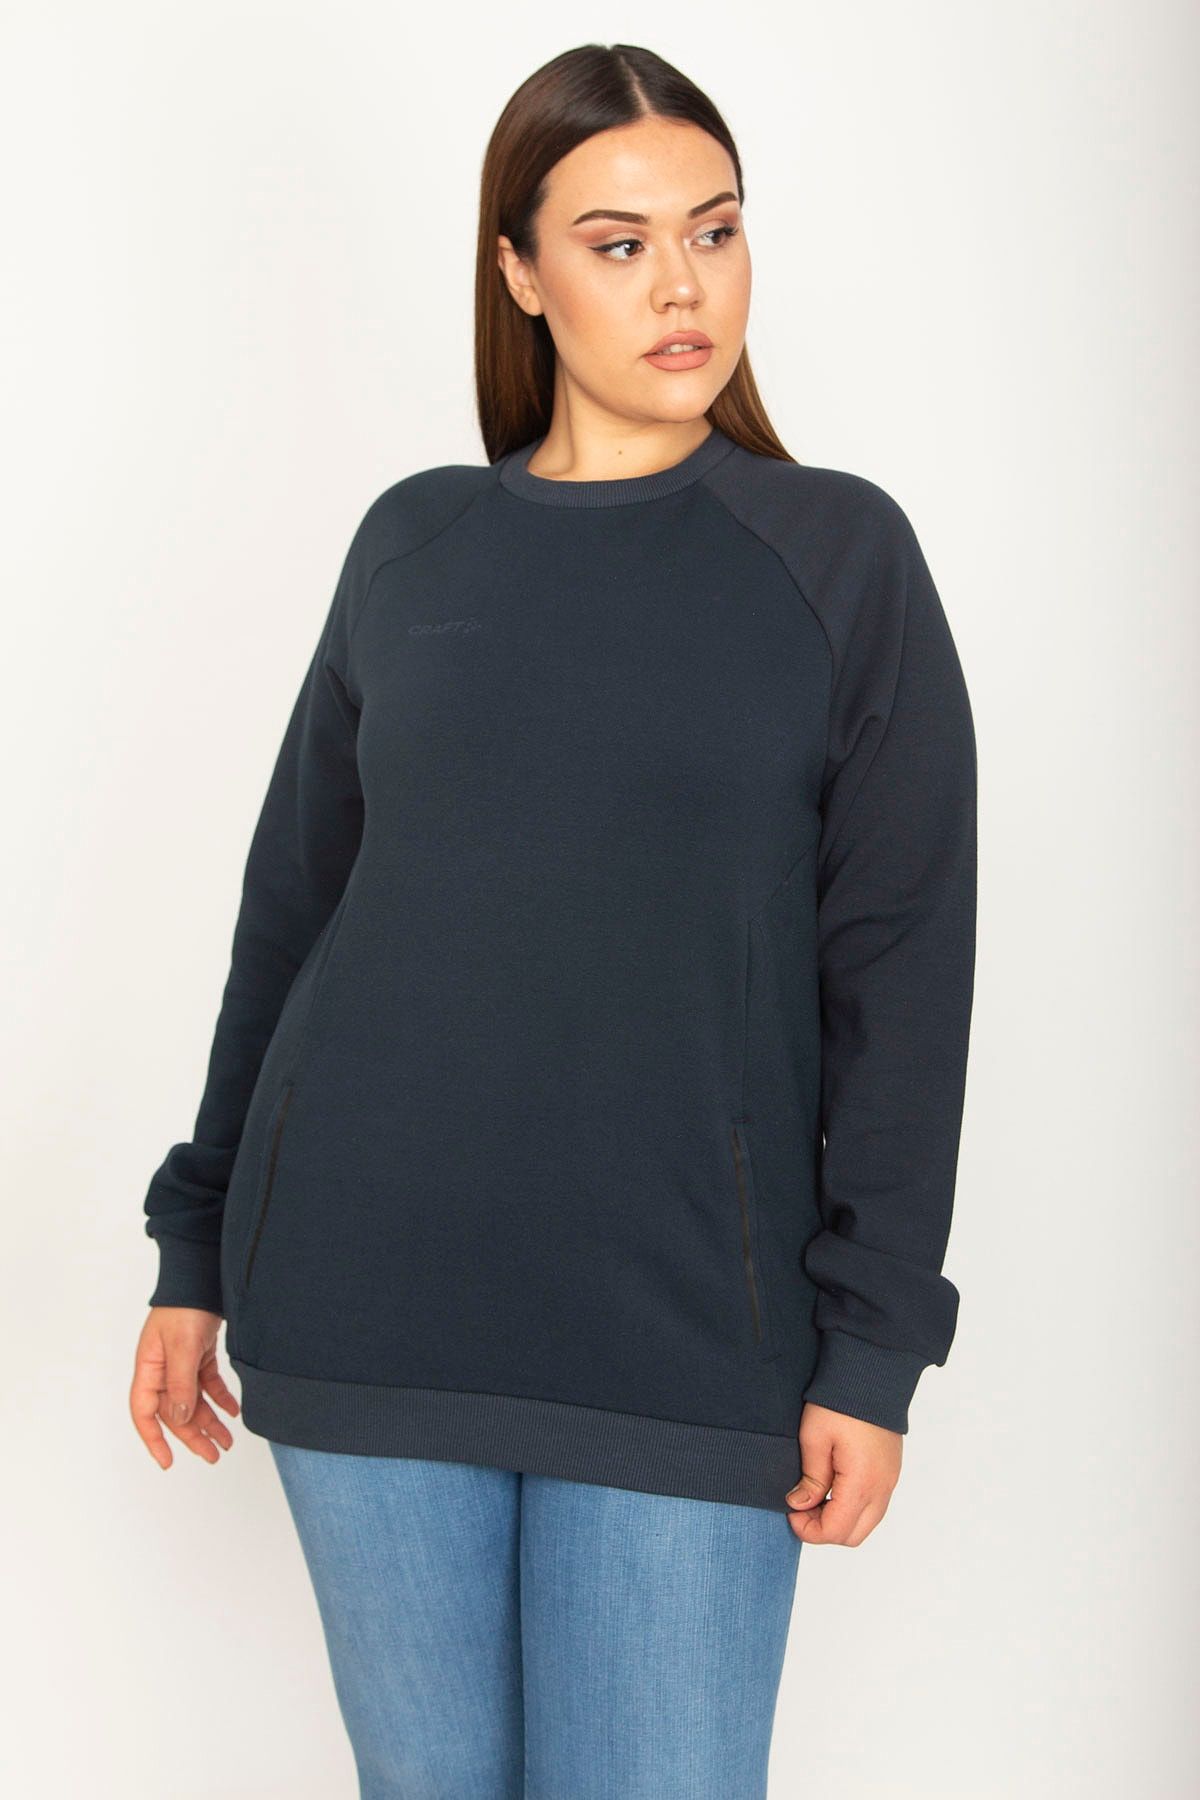 Şans Tekstil Kadın Lacivert Kup Ve Fermuar Cep Detaylı Reglan Kol Sweatshirt 26a26511